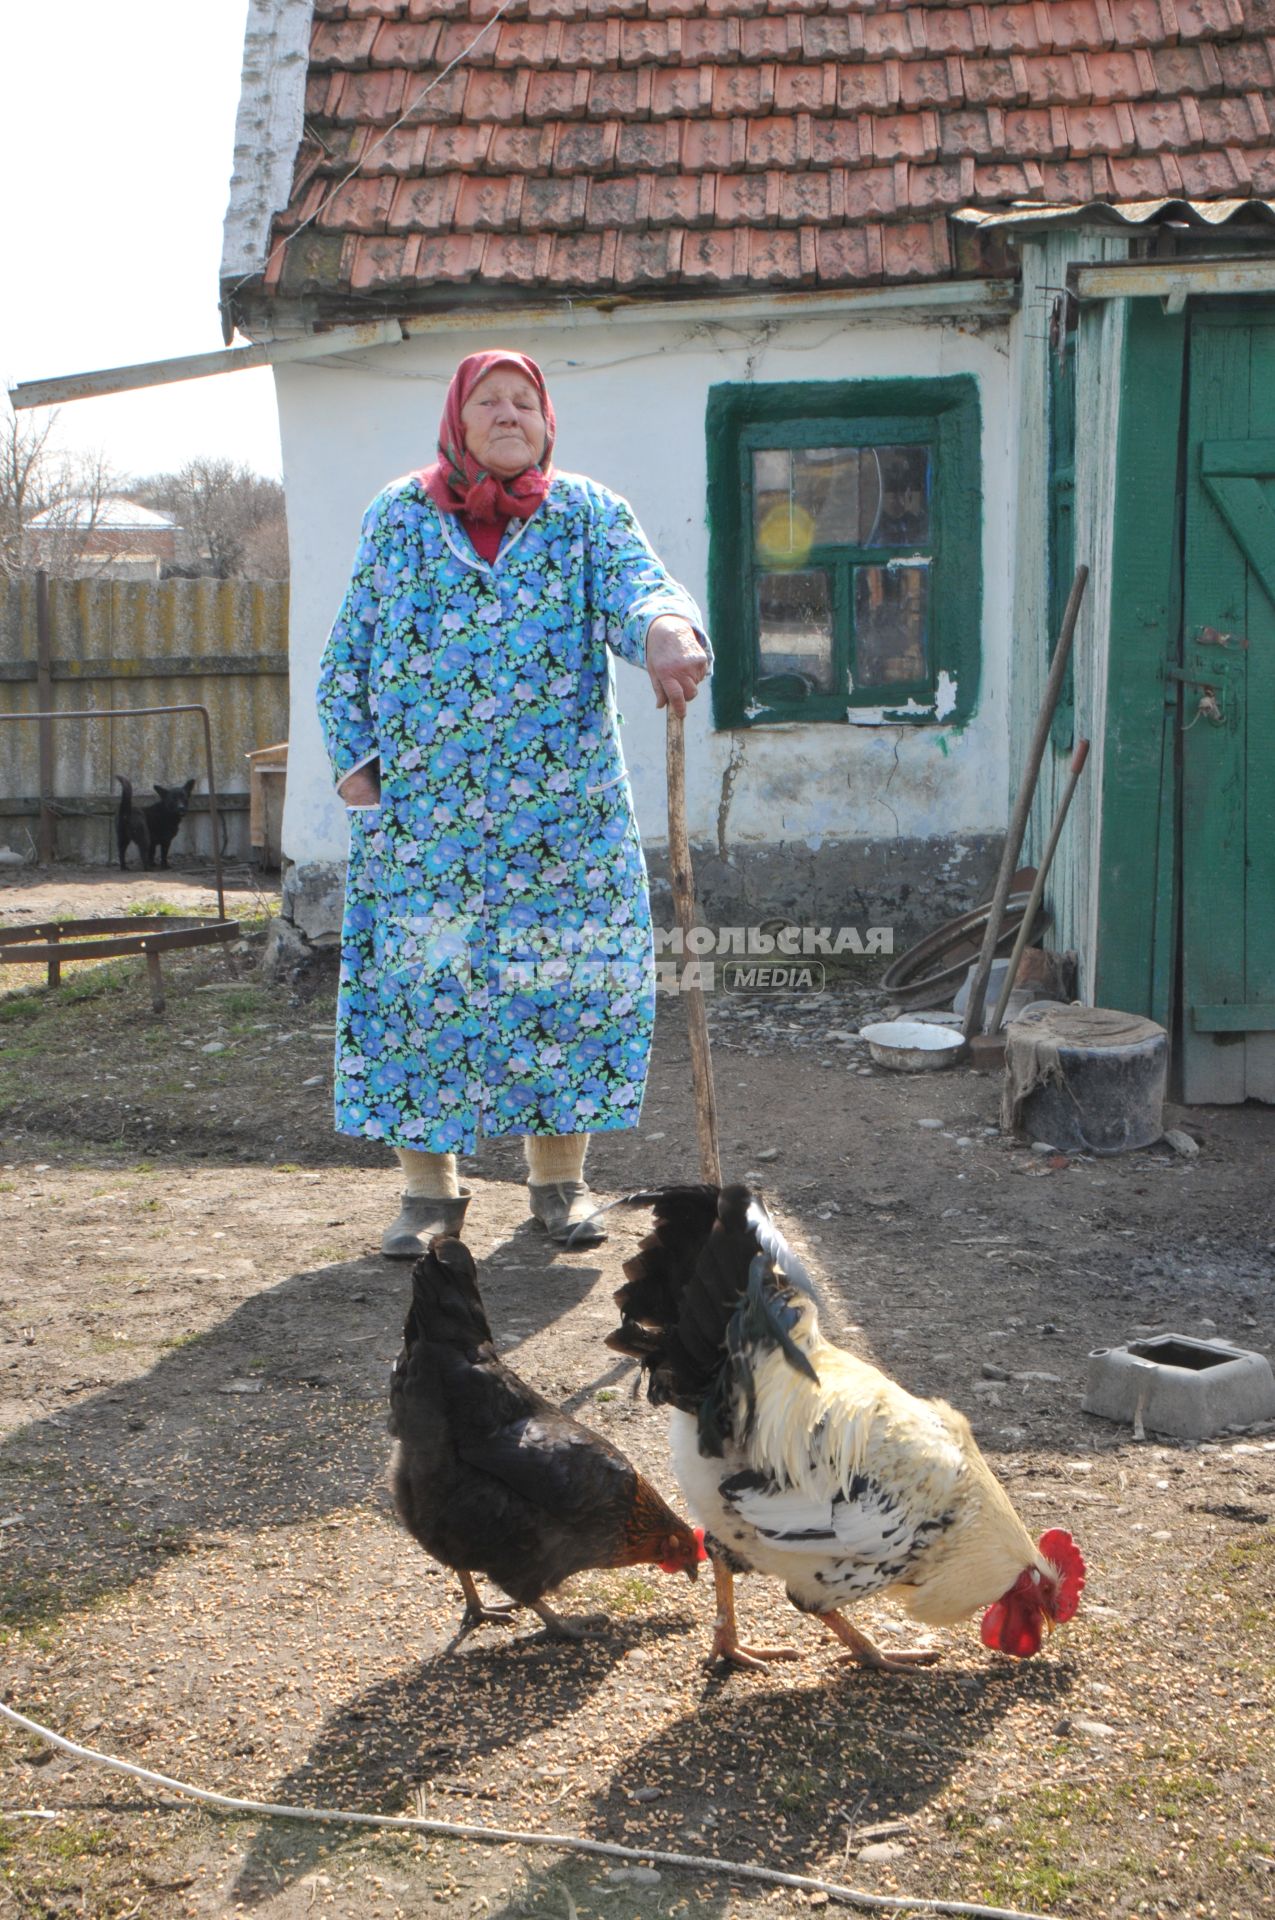 Пенсионер стоит рядом со своим домом в деревне, рядом пасутся куры.